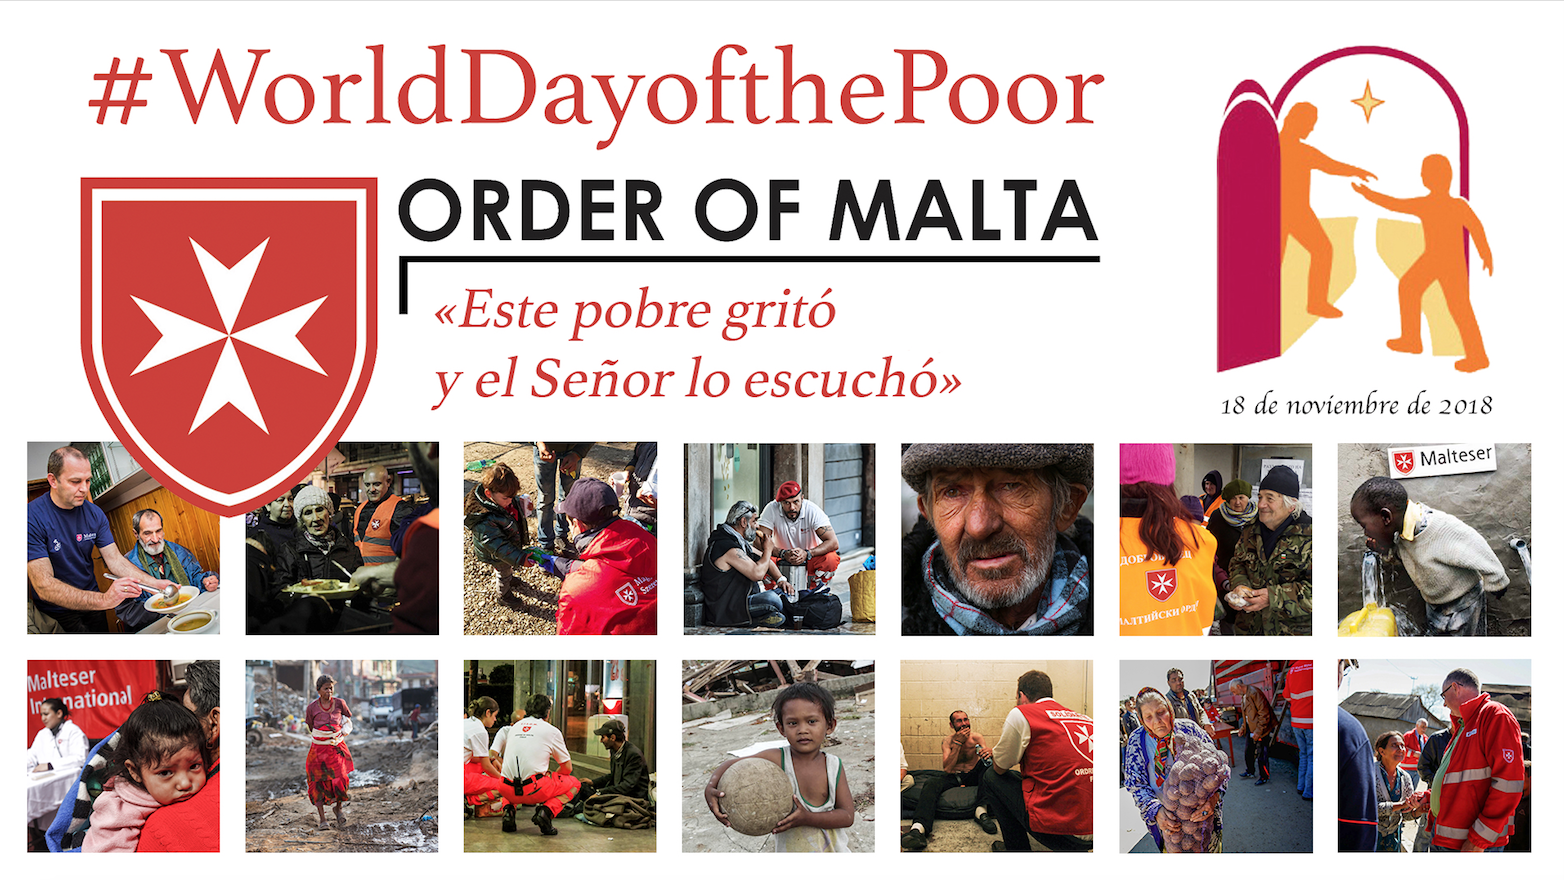 La Orden de Malta responde al llamamiento del Papa Francisco en la Jornada Mundial de los Pobres con iniciativas en todo el mundo